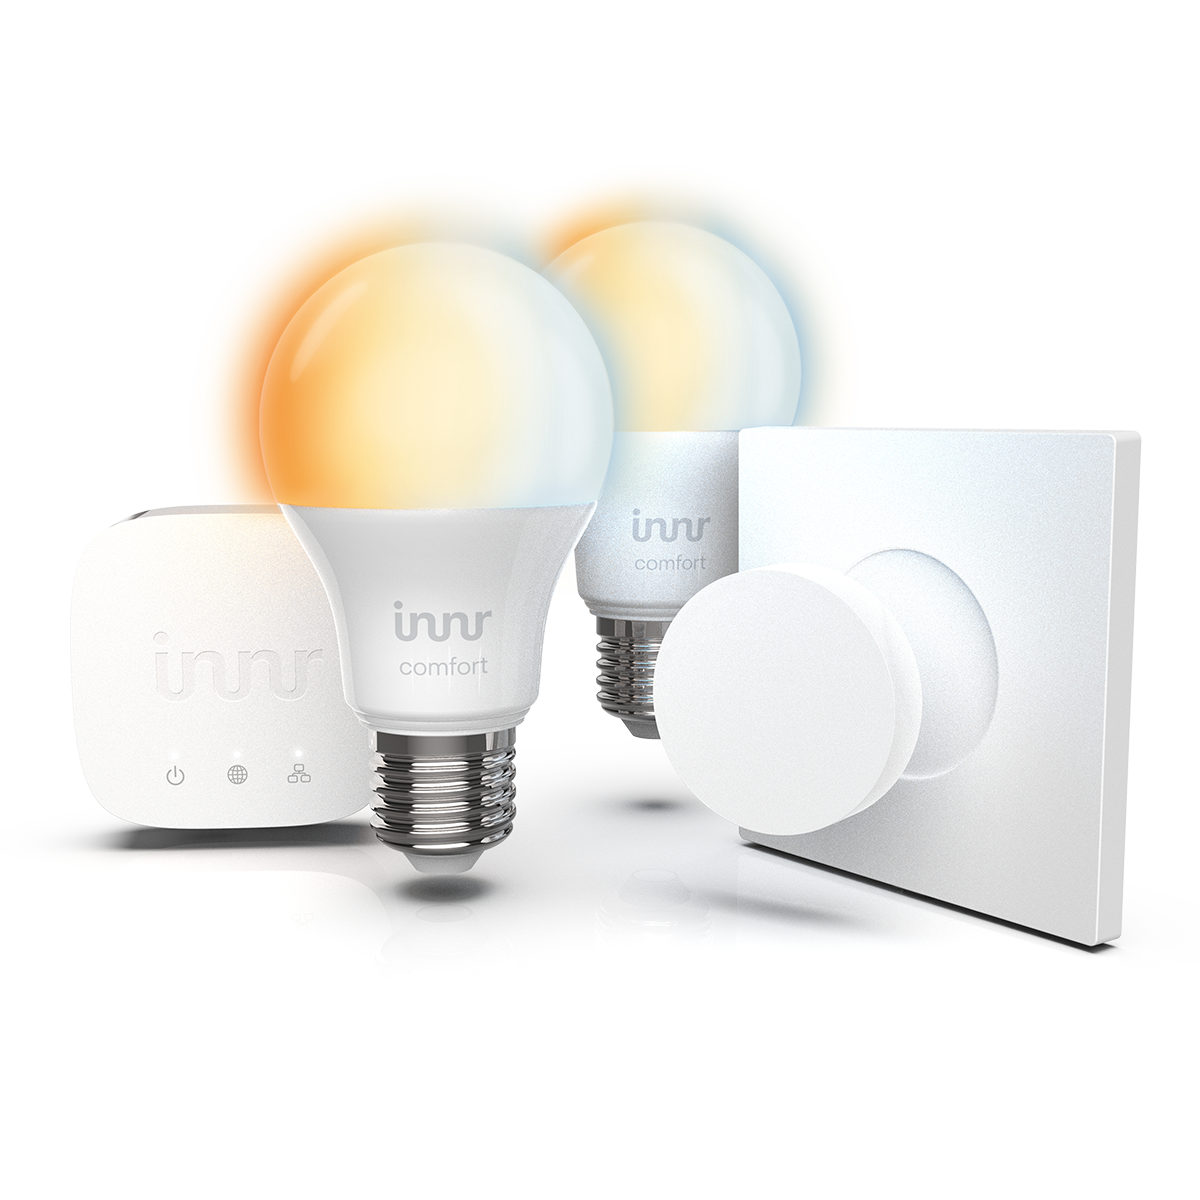 equipment T-2 Hub, SK & Komfort automation Kit LED Starter Birne INNR E27 Smart home Lampe 2x 279 - Komfort Fernbedienung